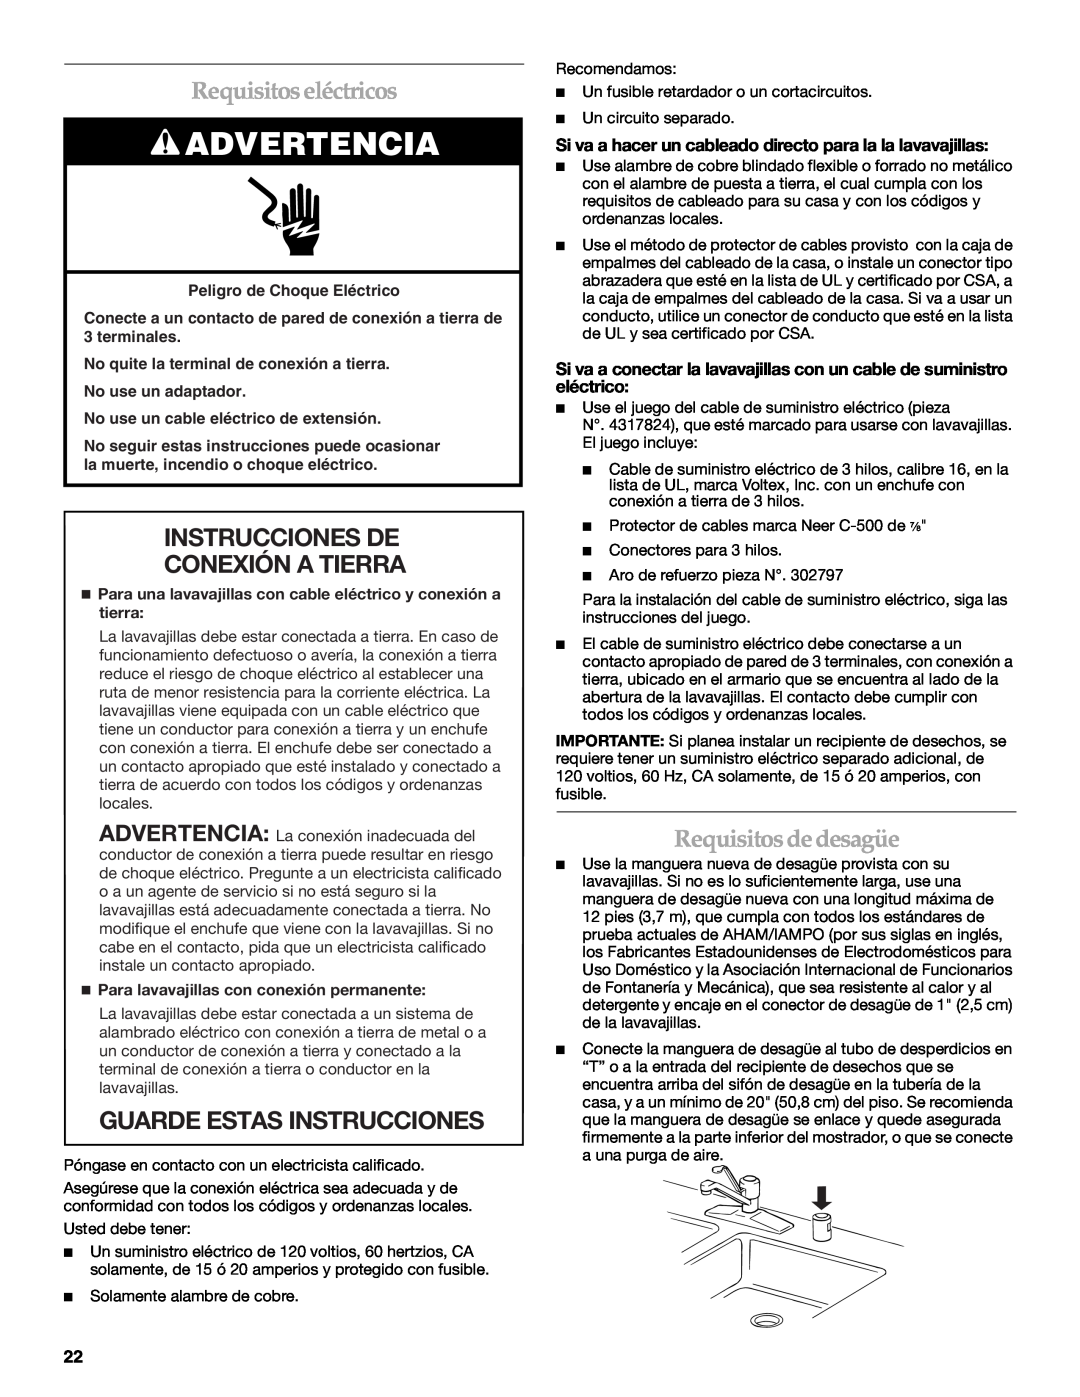 KitchenAid W10118037B Requisitos eléctricos, Instrucciones De Conexión A Tierra, Guarde Estas Instrucciones, Advertencia 